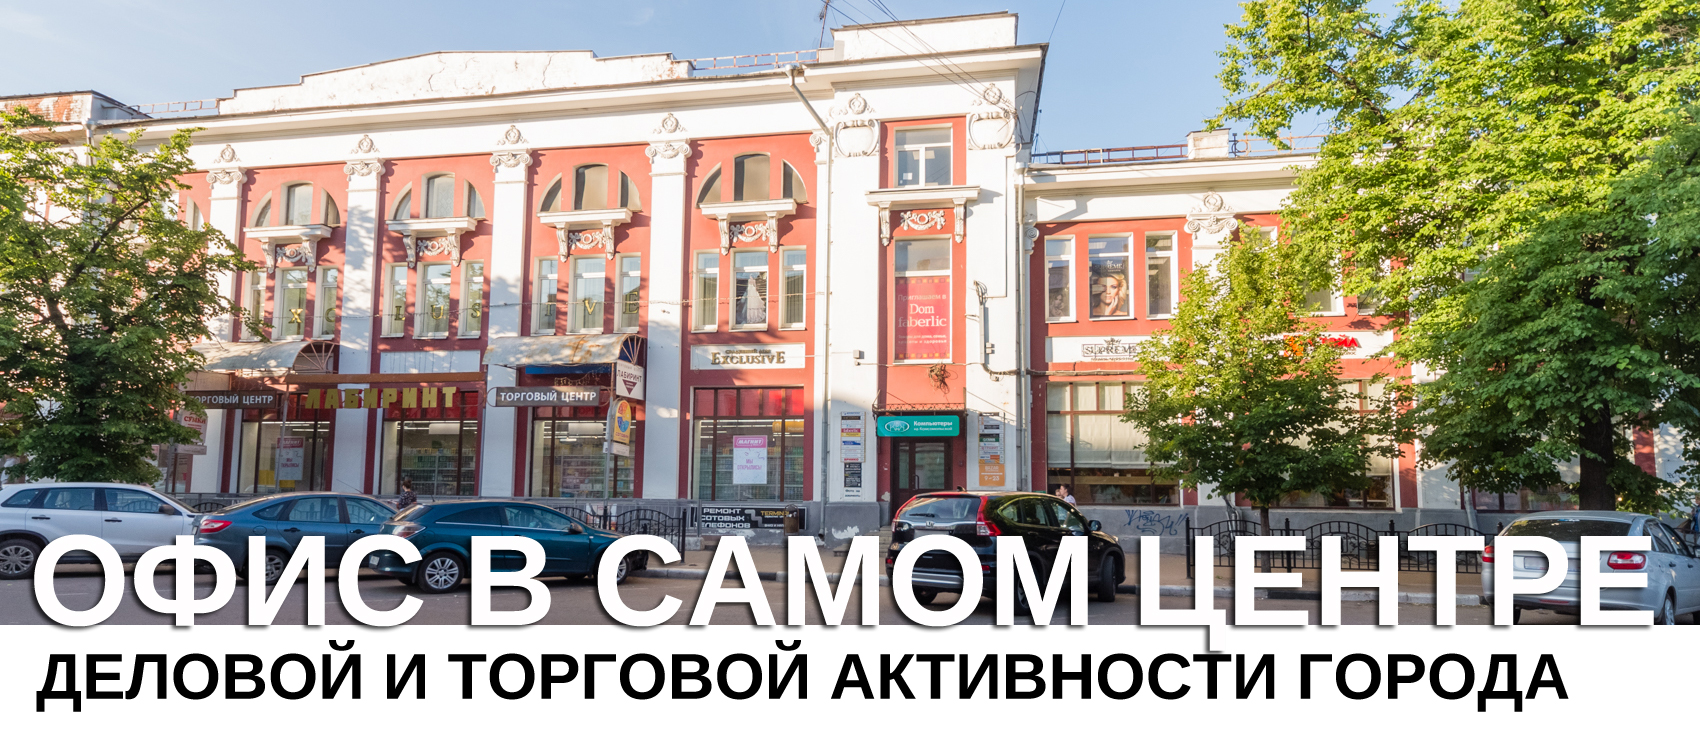 Срочная продажа офиса в Ярославле